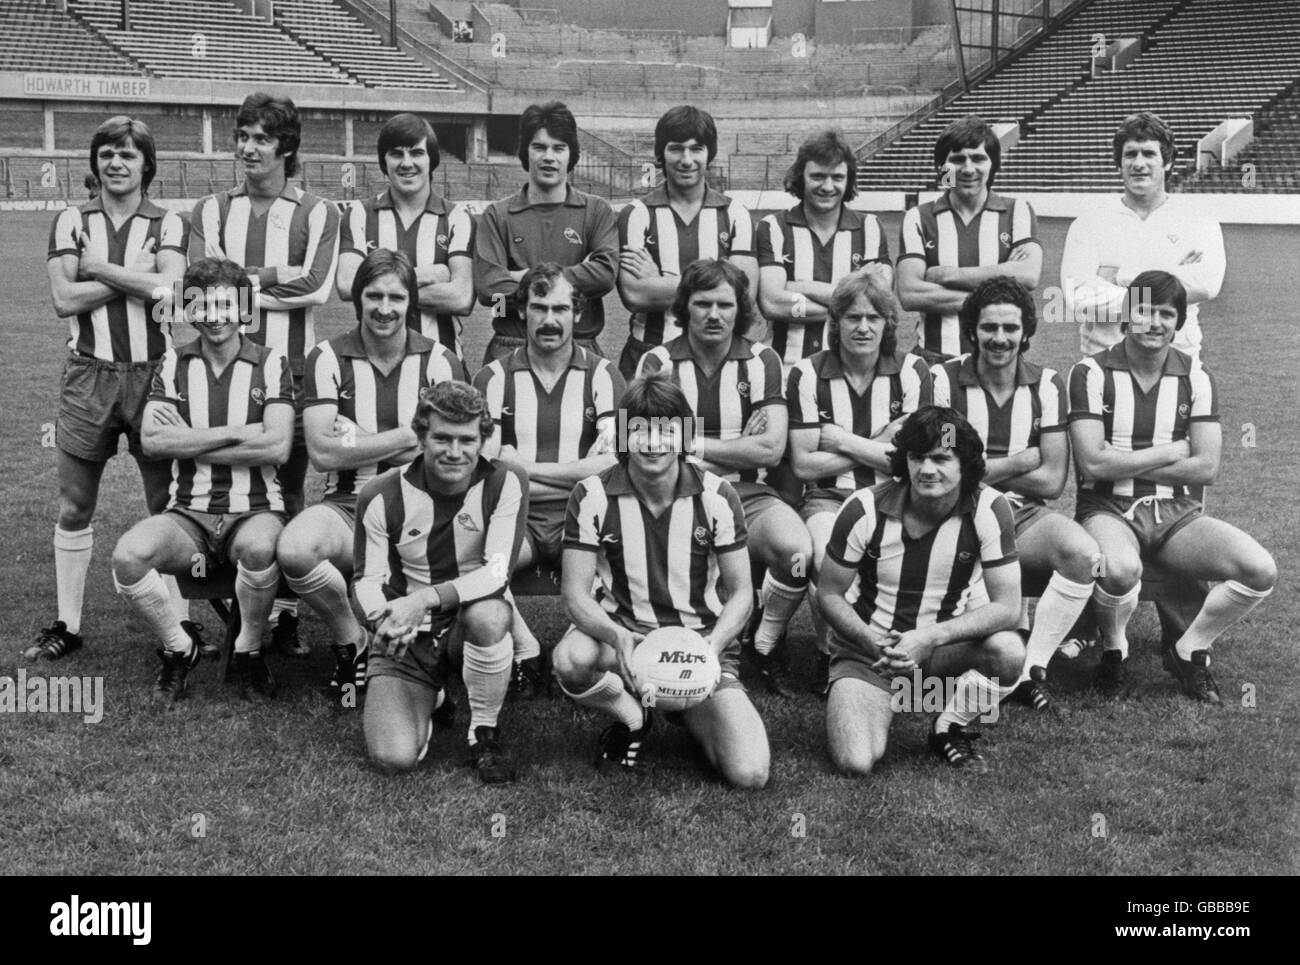 Soccer - Photocall - Groupe de l'équipe de Sheffield Wednesday - 1977 Banque D'Images